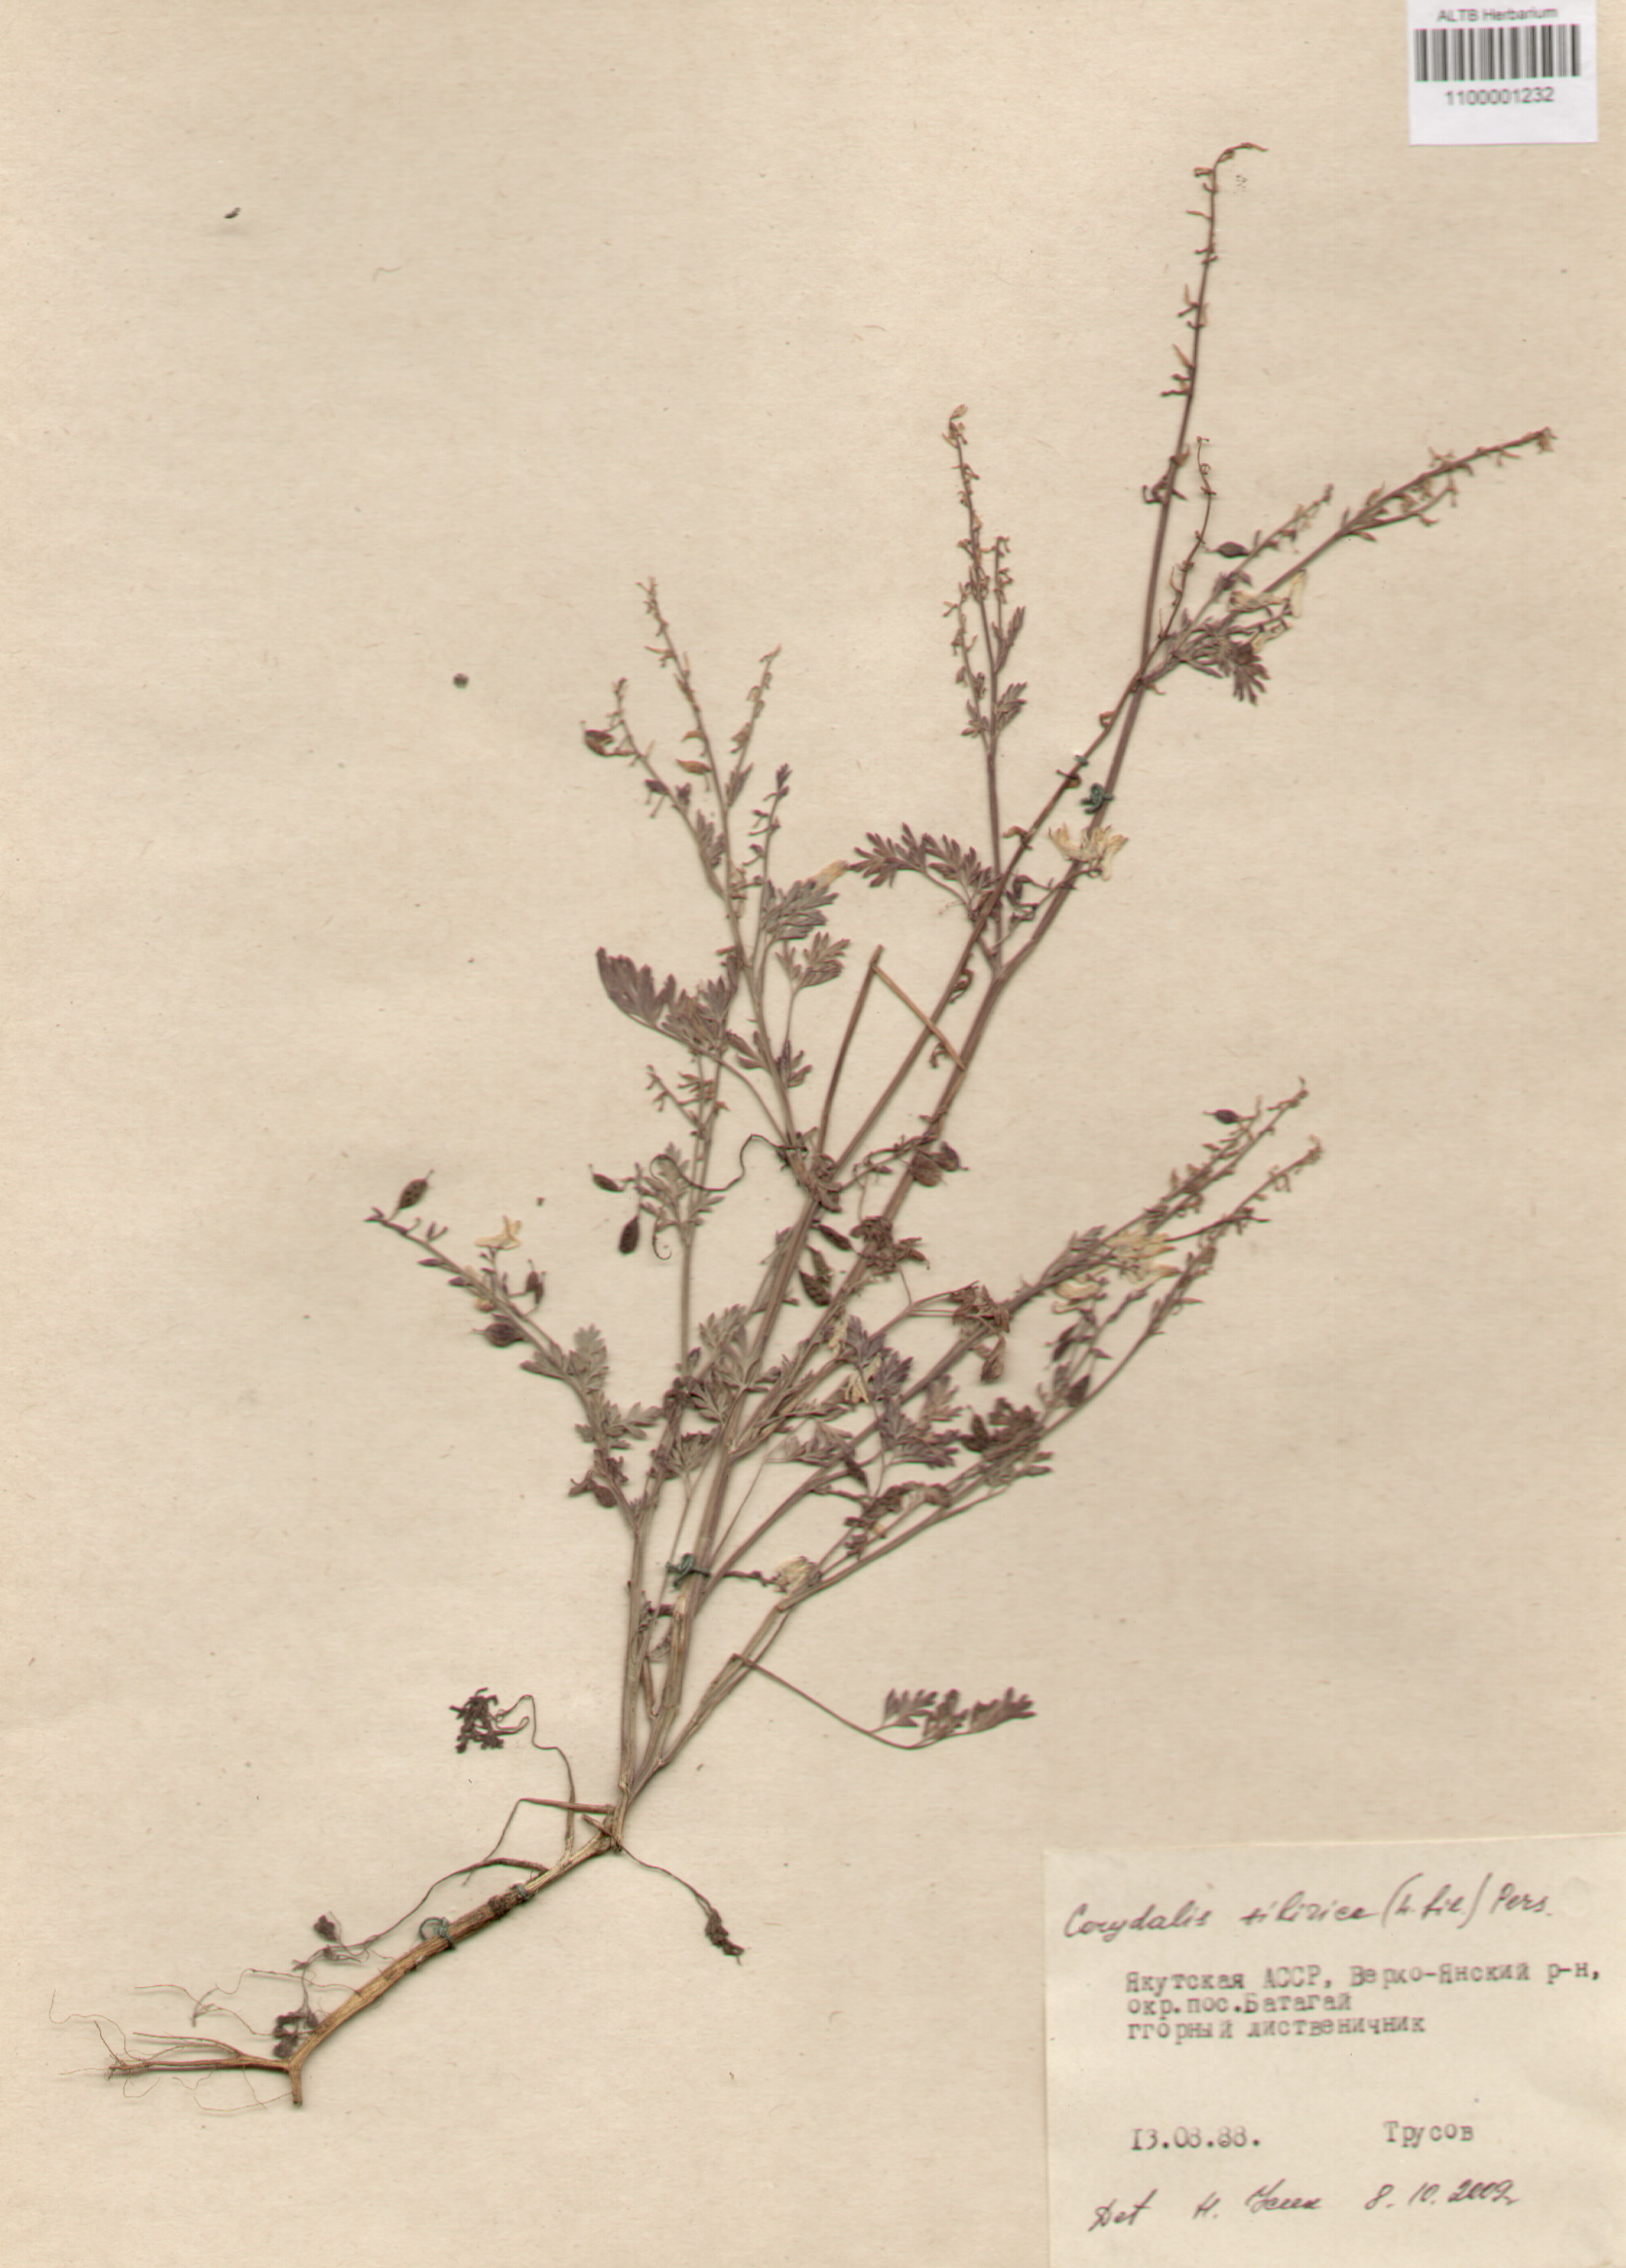 Fumariaceae,Corydalis sibirica (L. fil) Pers.